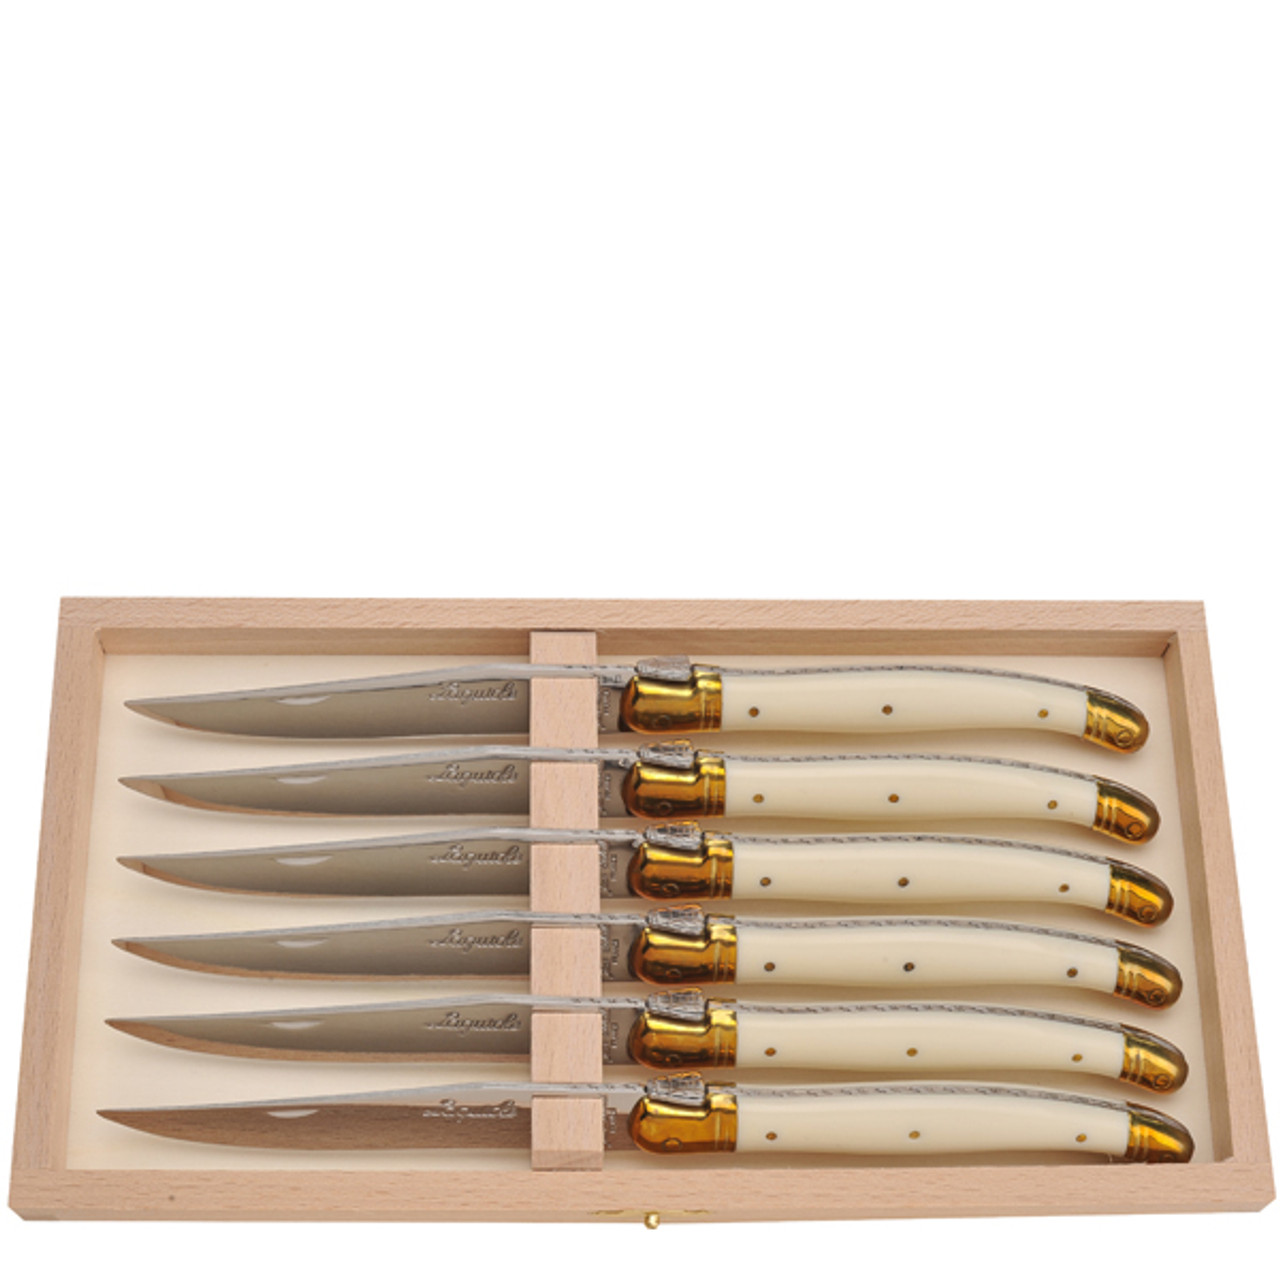  Jean Dubost 6 Steak Knives in Wooden Block, Ivory: Steak Knife  Sets: Home & Kitchen